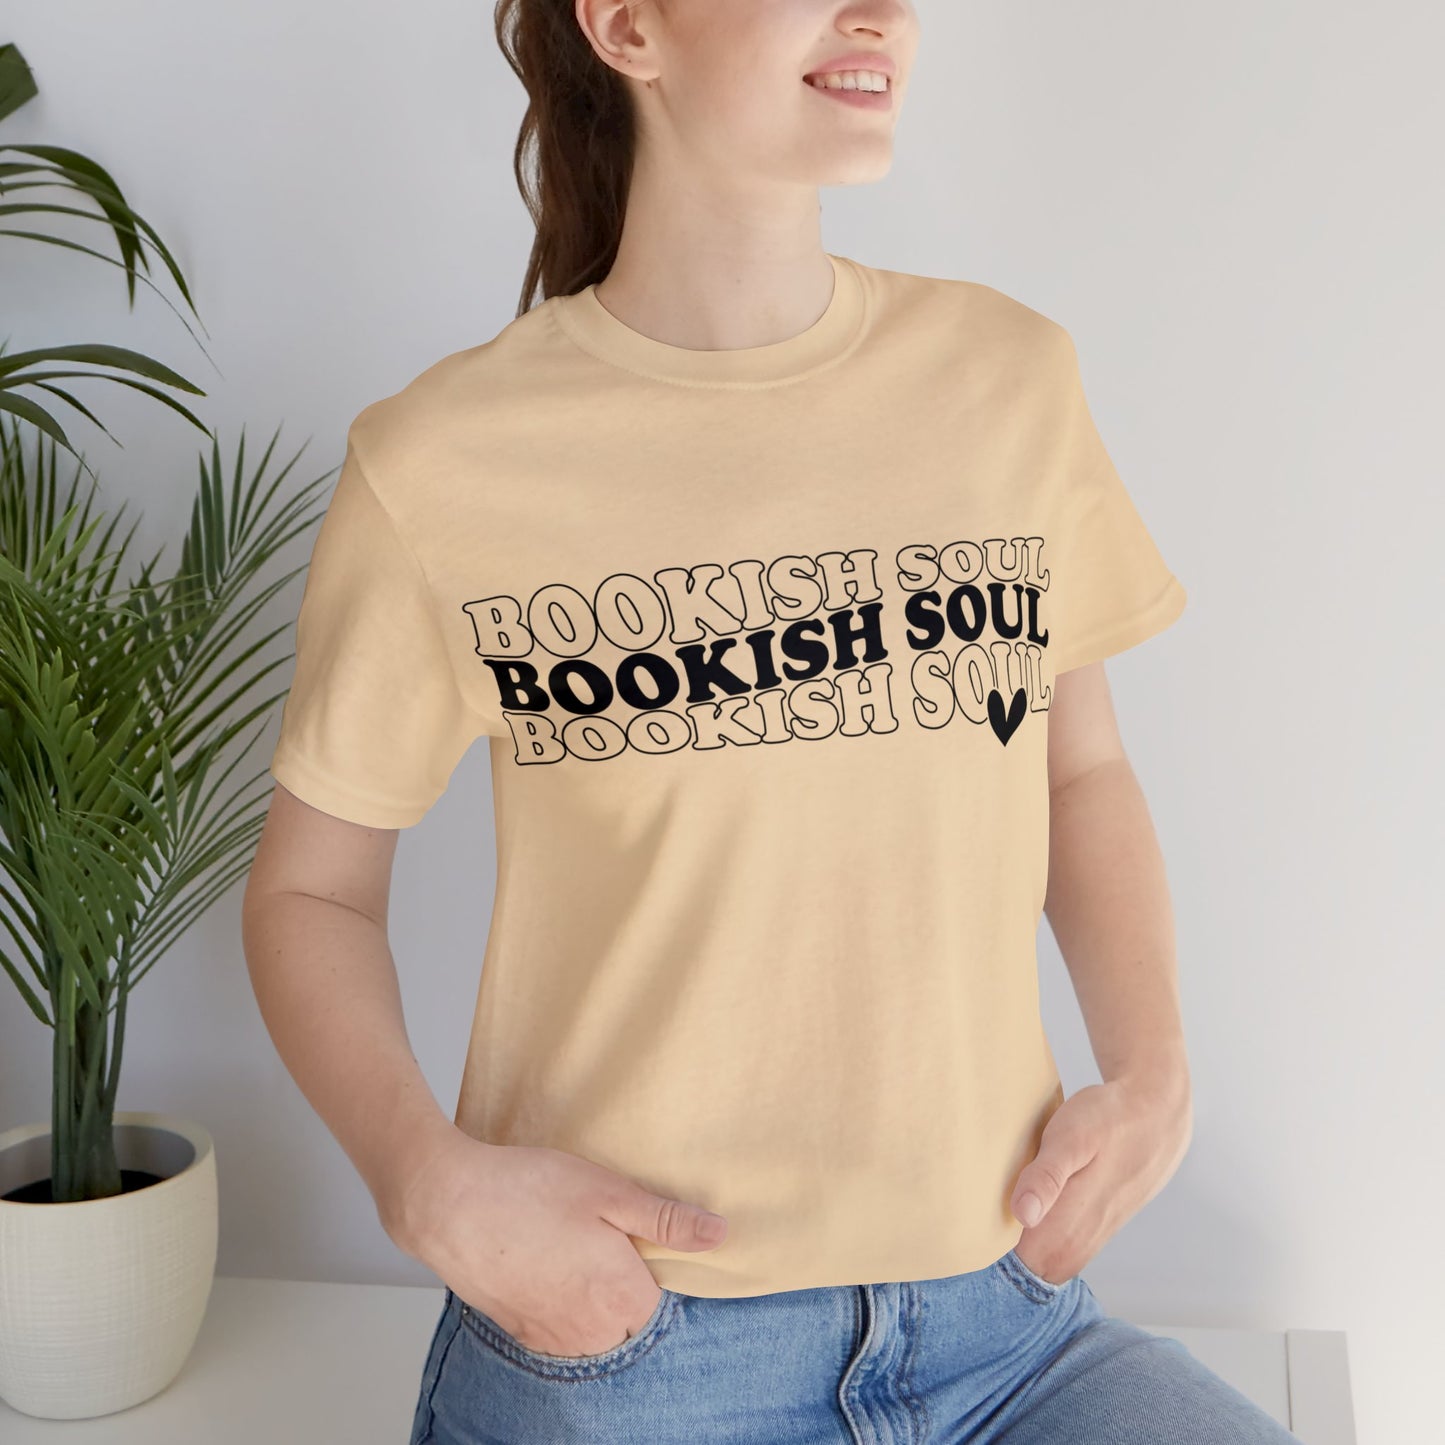 Bookish Soul Tee